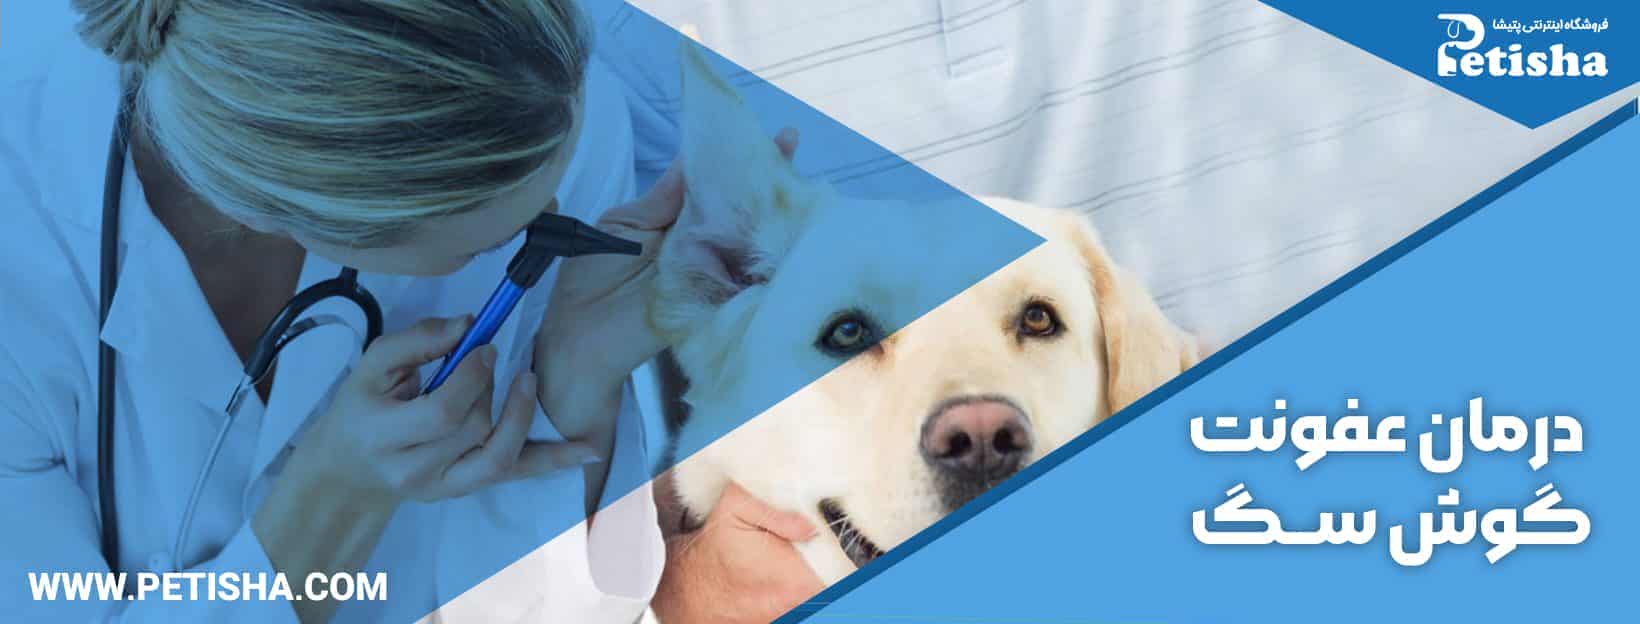 درمان عفونت گوش سگ | نحوه شناسایی، پیشگیری و درمان عفونت گوش سگ